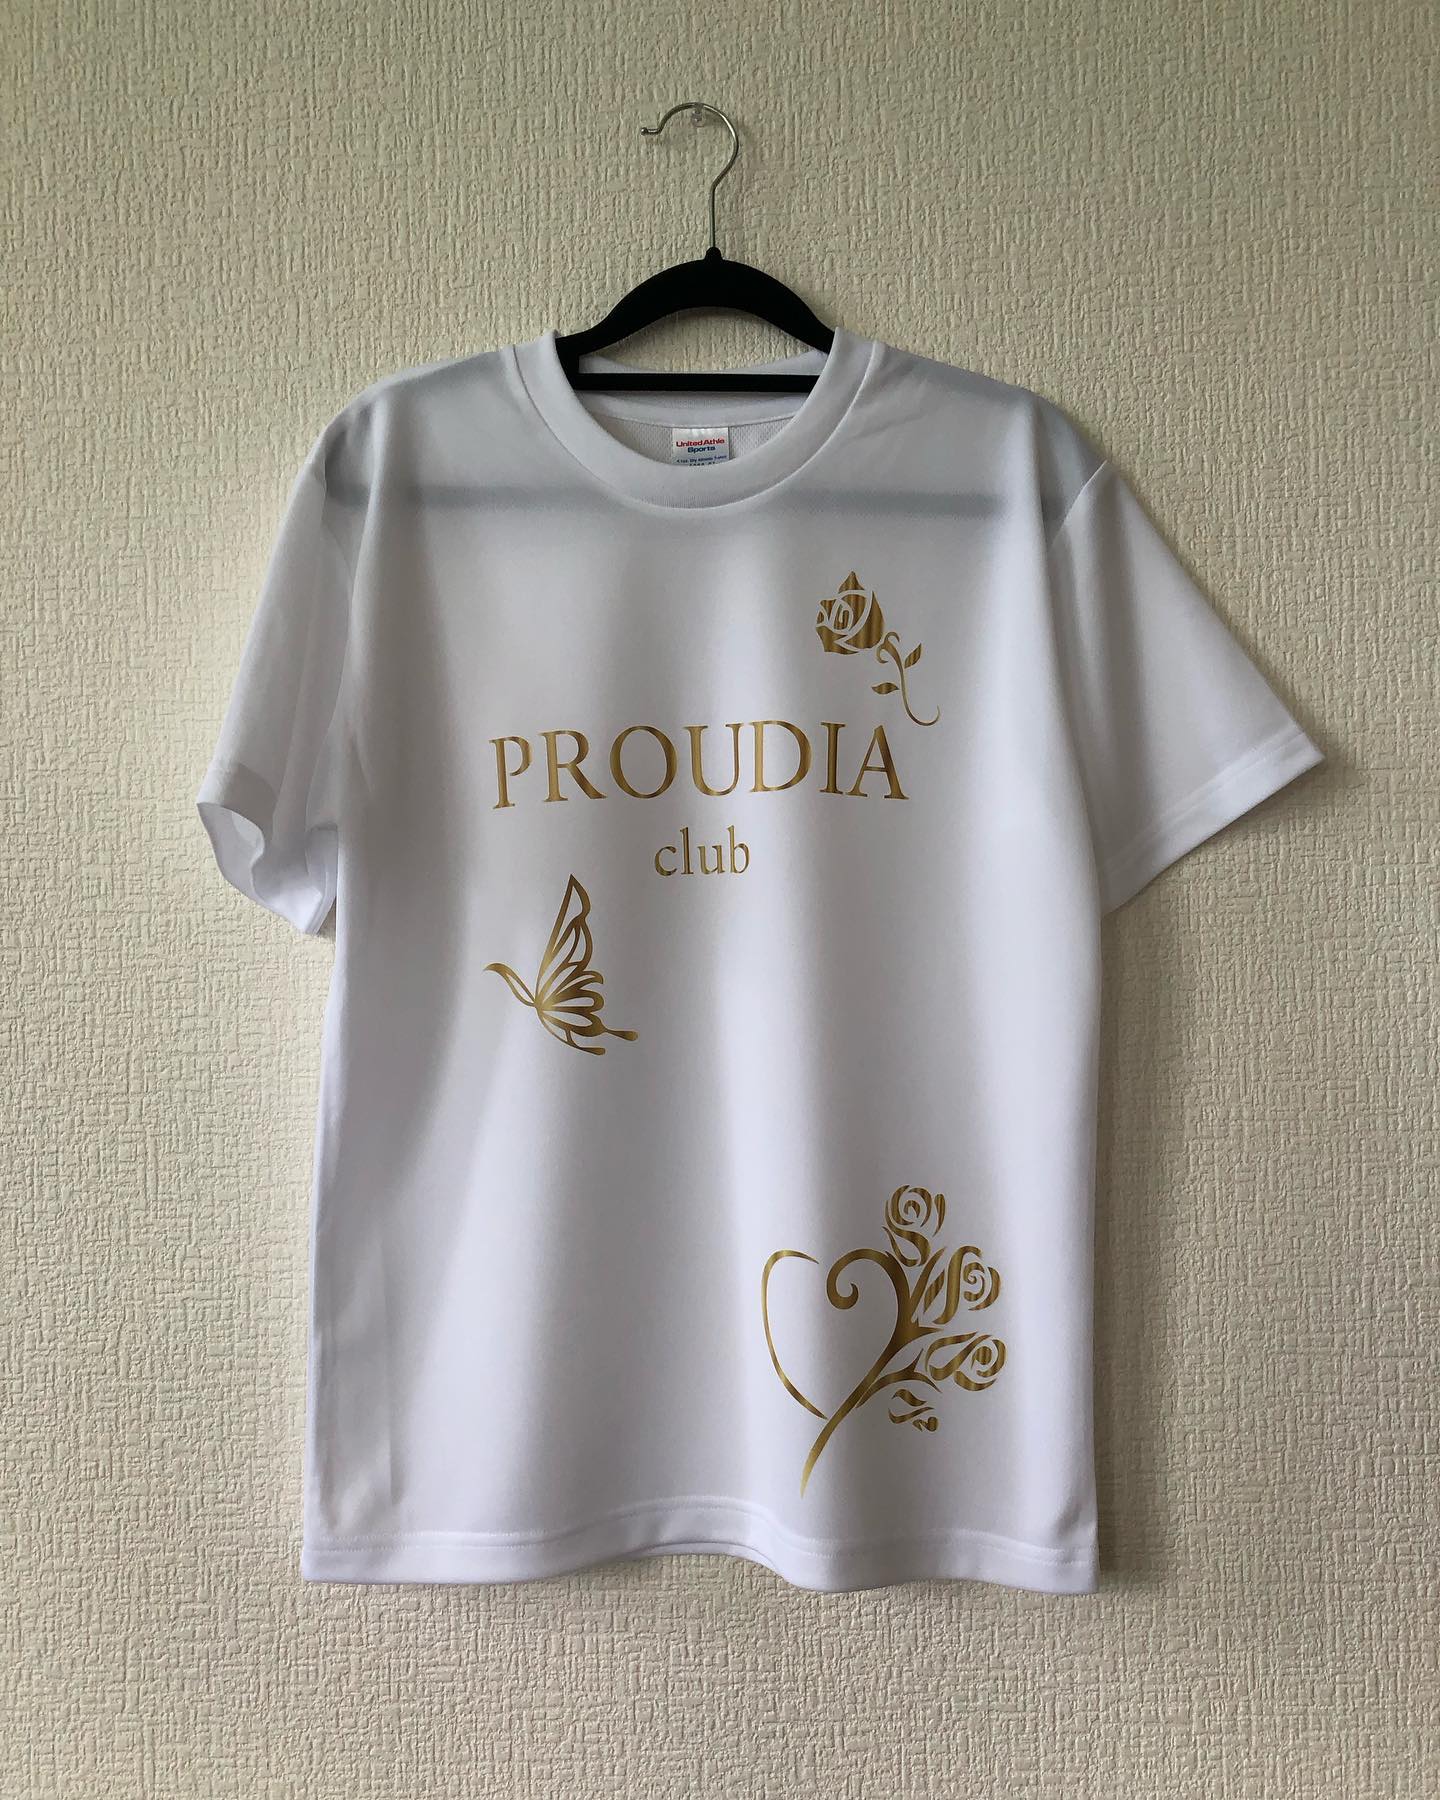 大分市の都町 「PROUDIA club」様からご依頼いただきました。